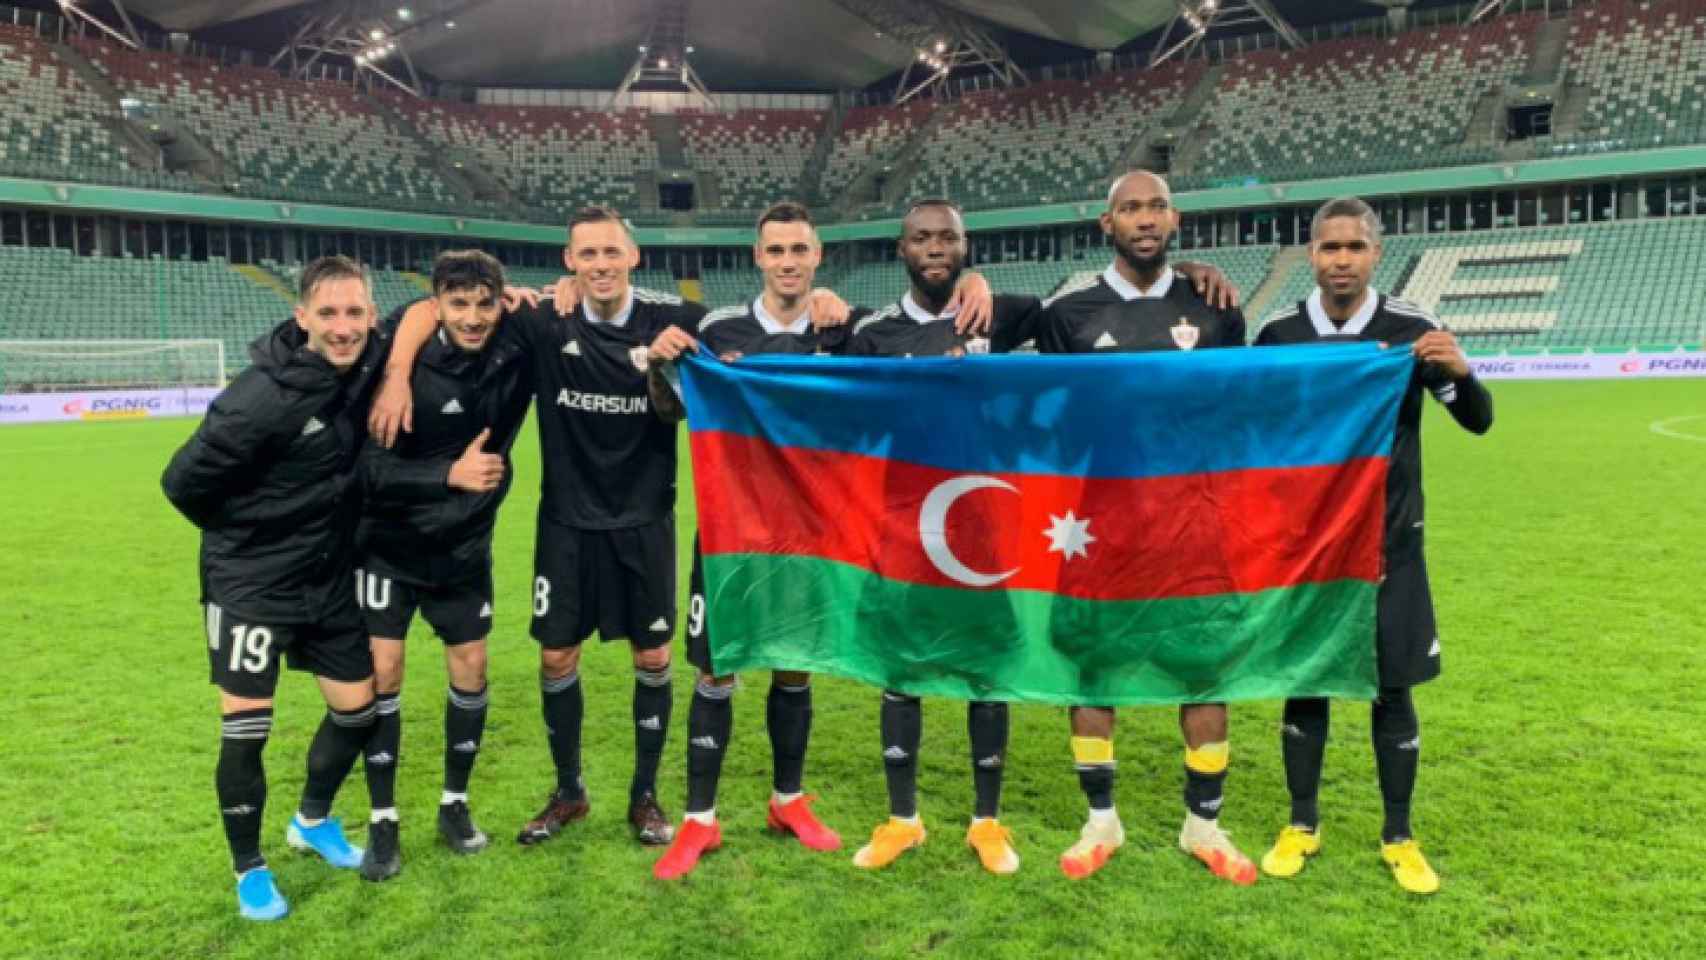 Jugadores del Qarabag sosteniendo la bandera de Azerbaiyán